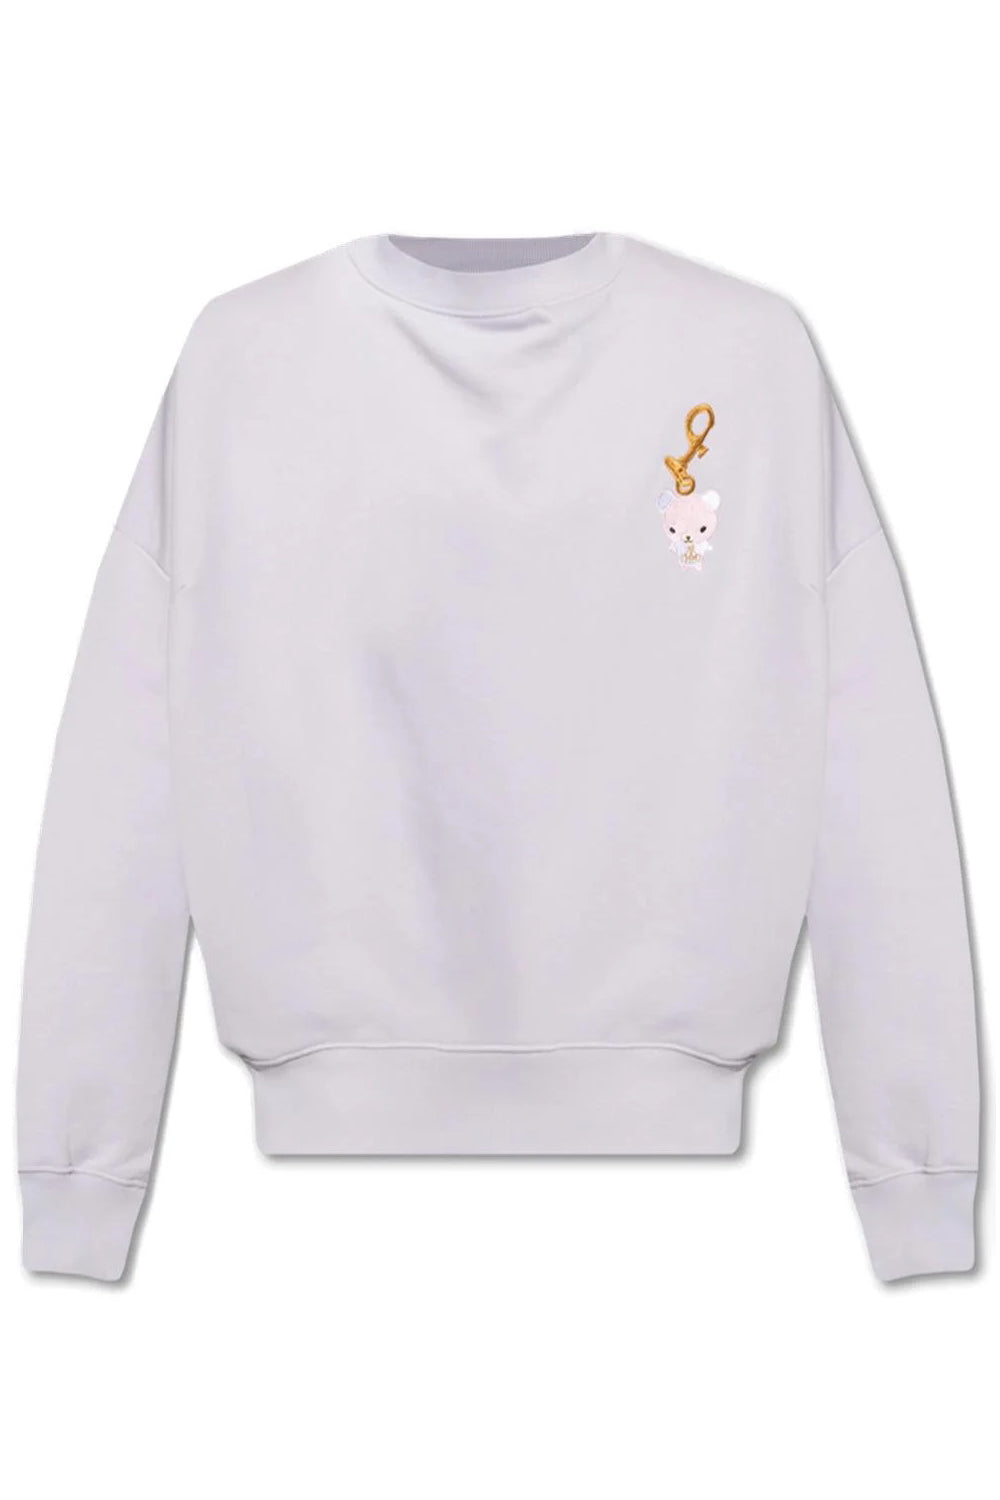 Men's Lavender Vivienne Westwood Orb Sweatshirt